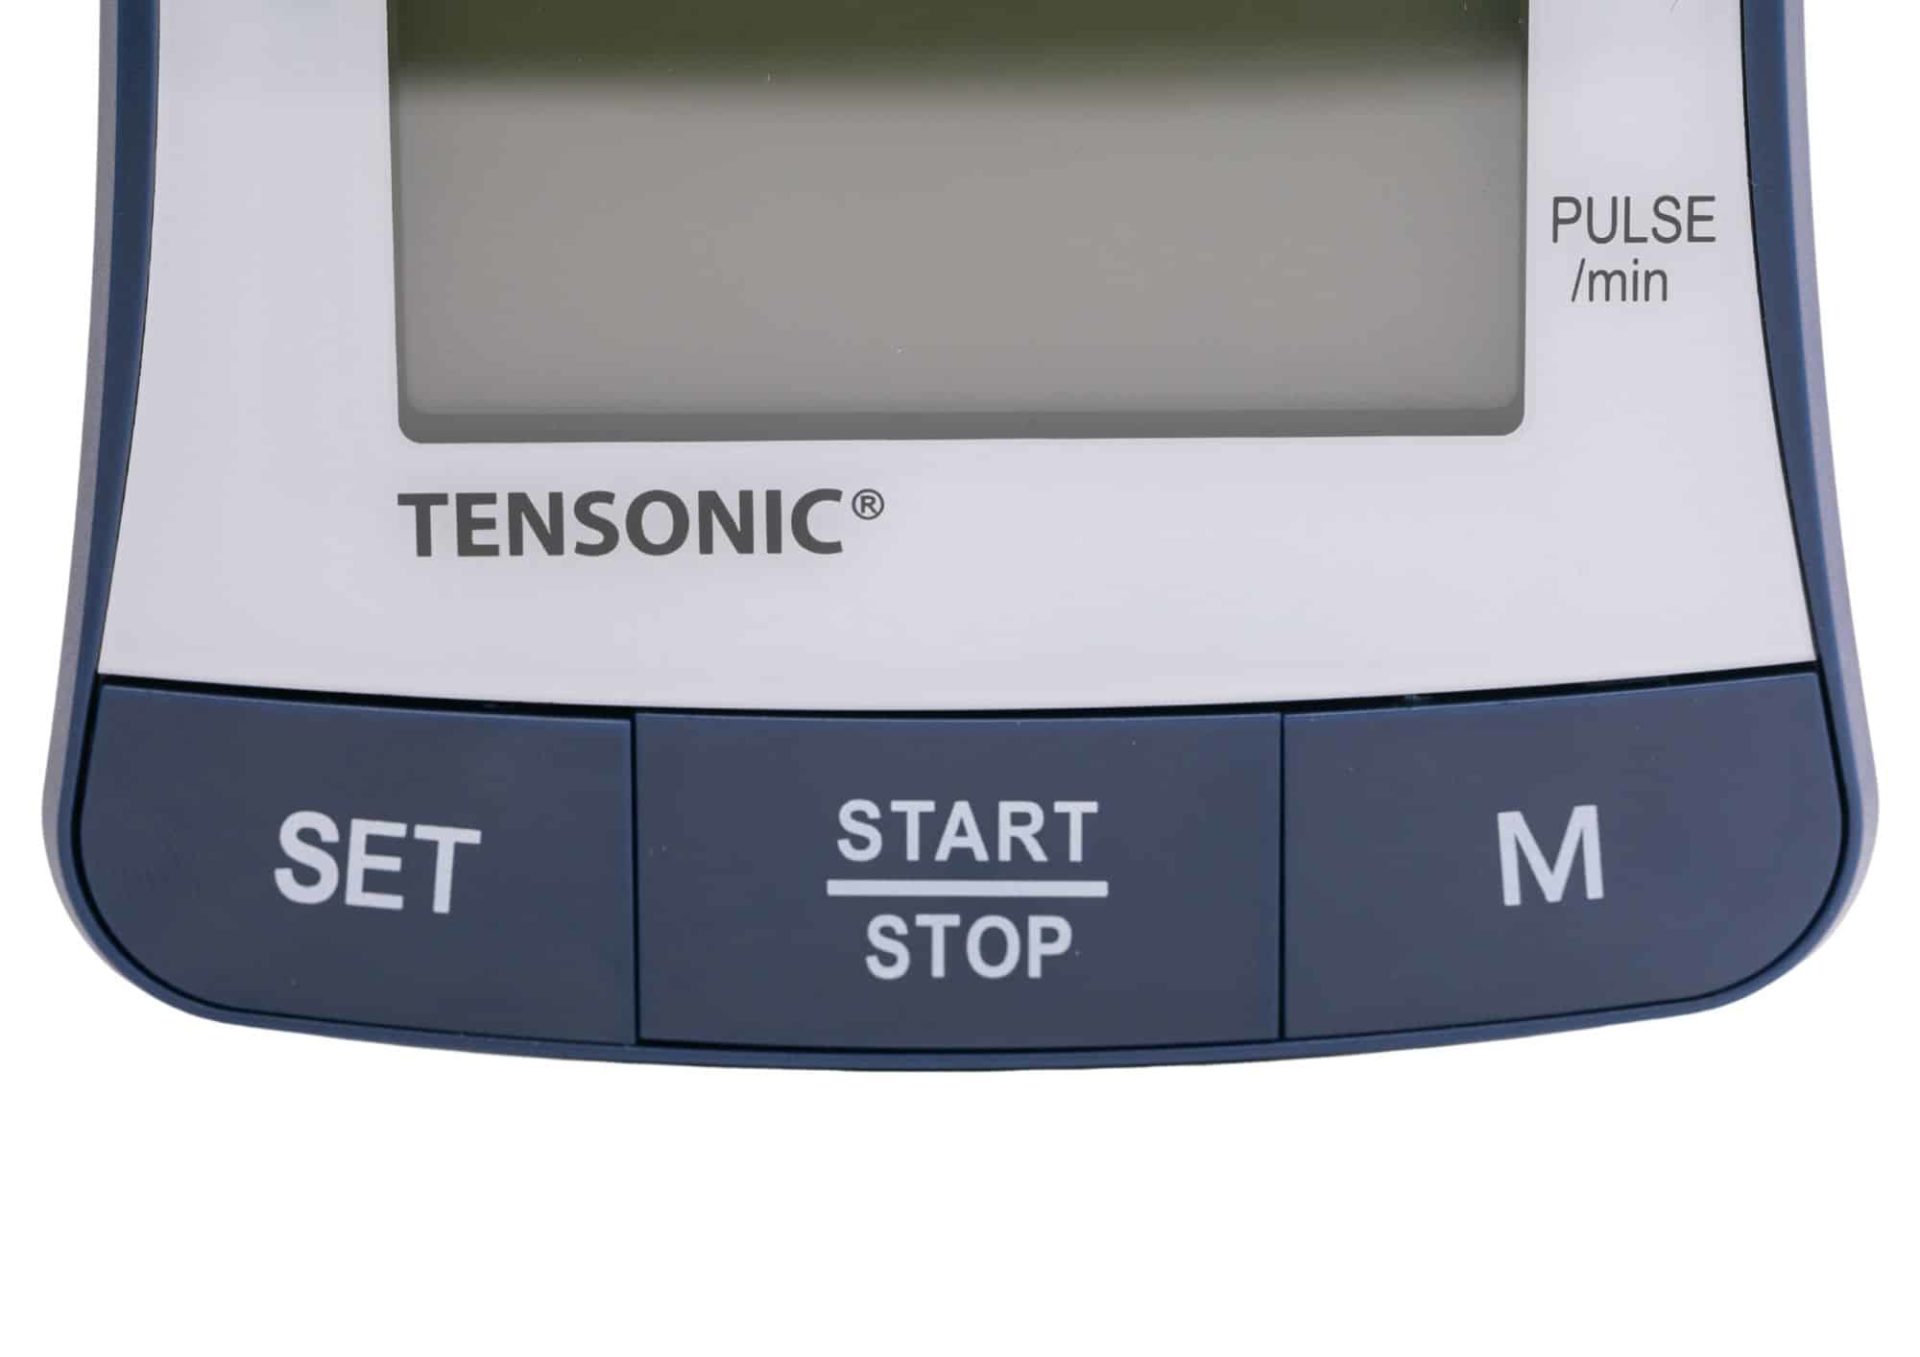 Tensiomètre Électronique Tensonic Bras - Spengler - LE PRO DU MEDICAL